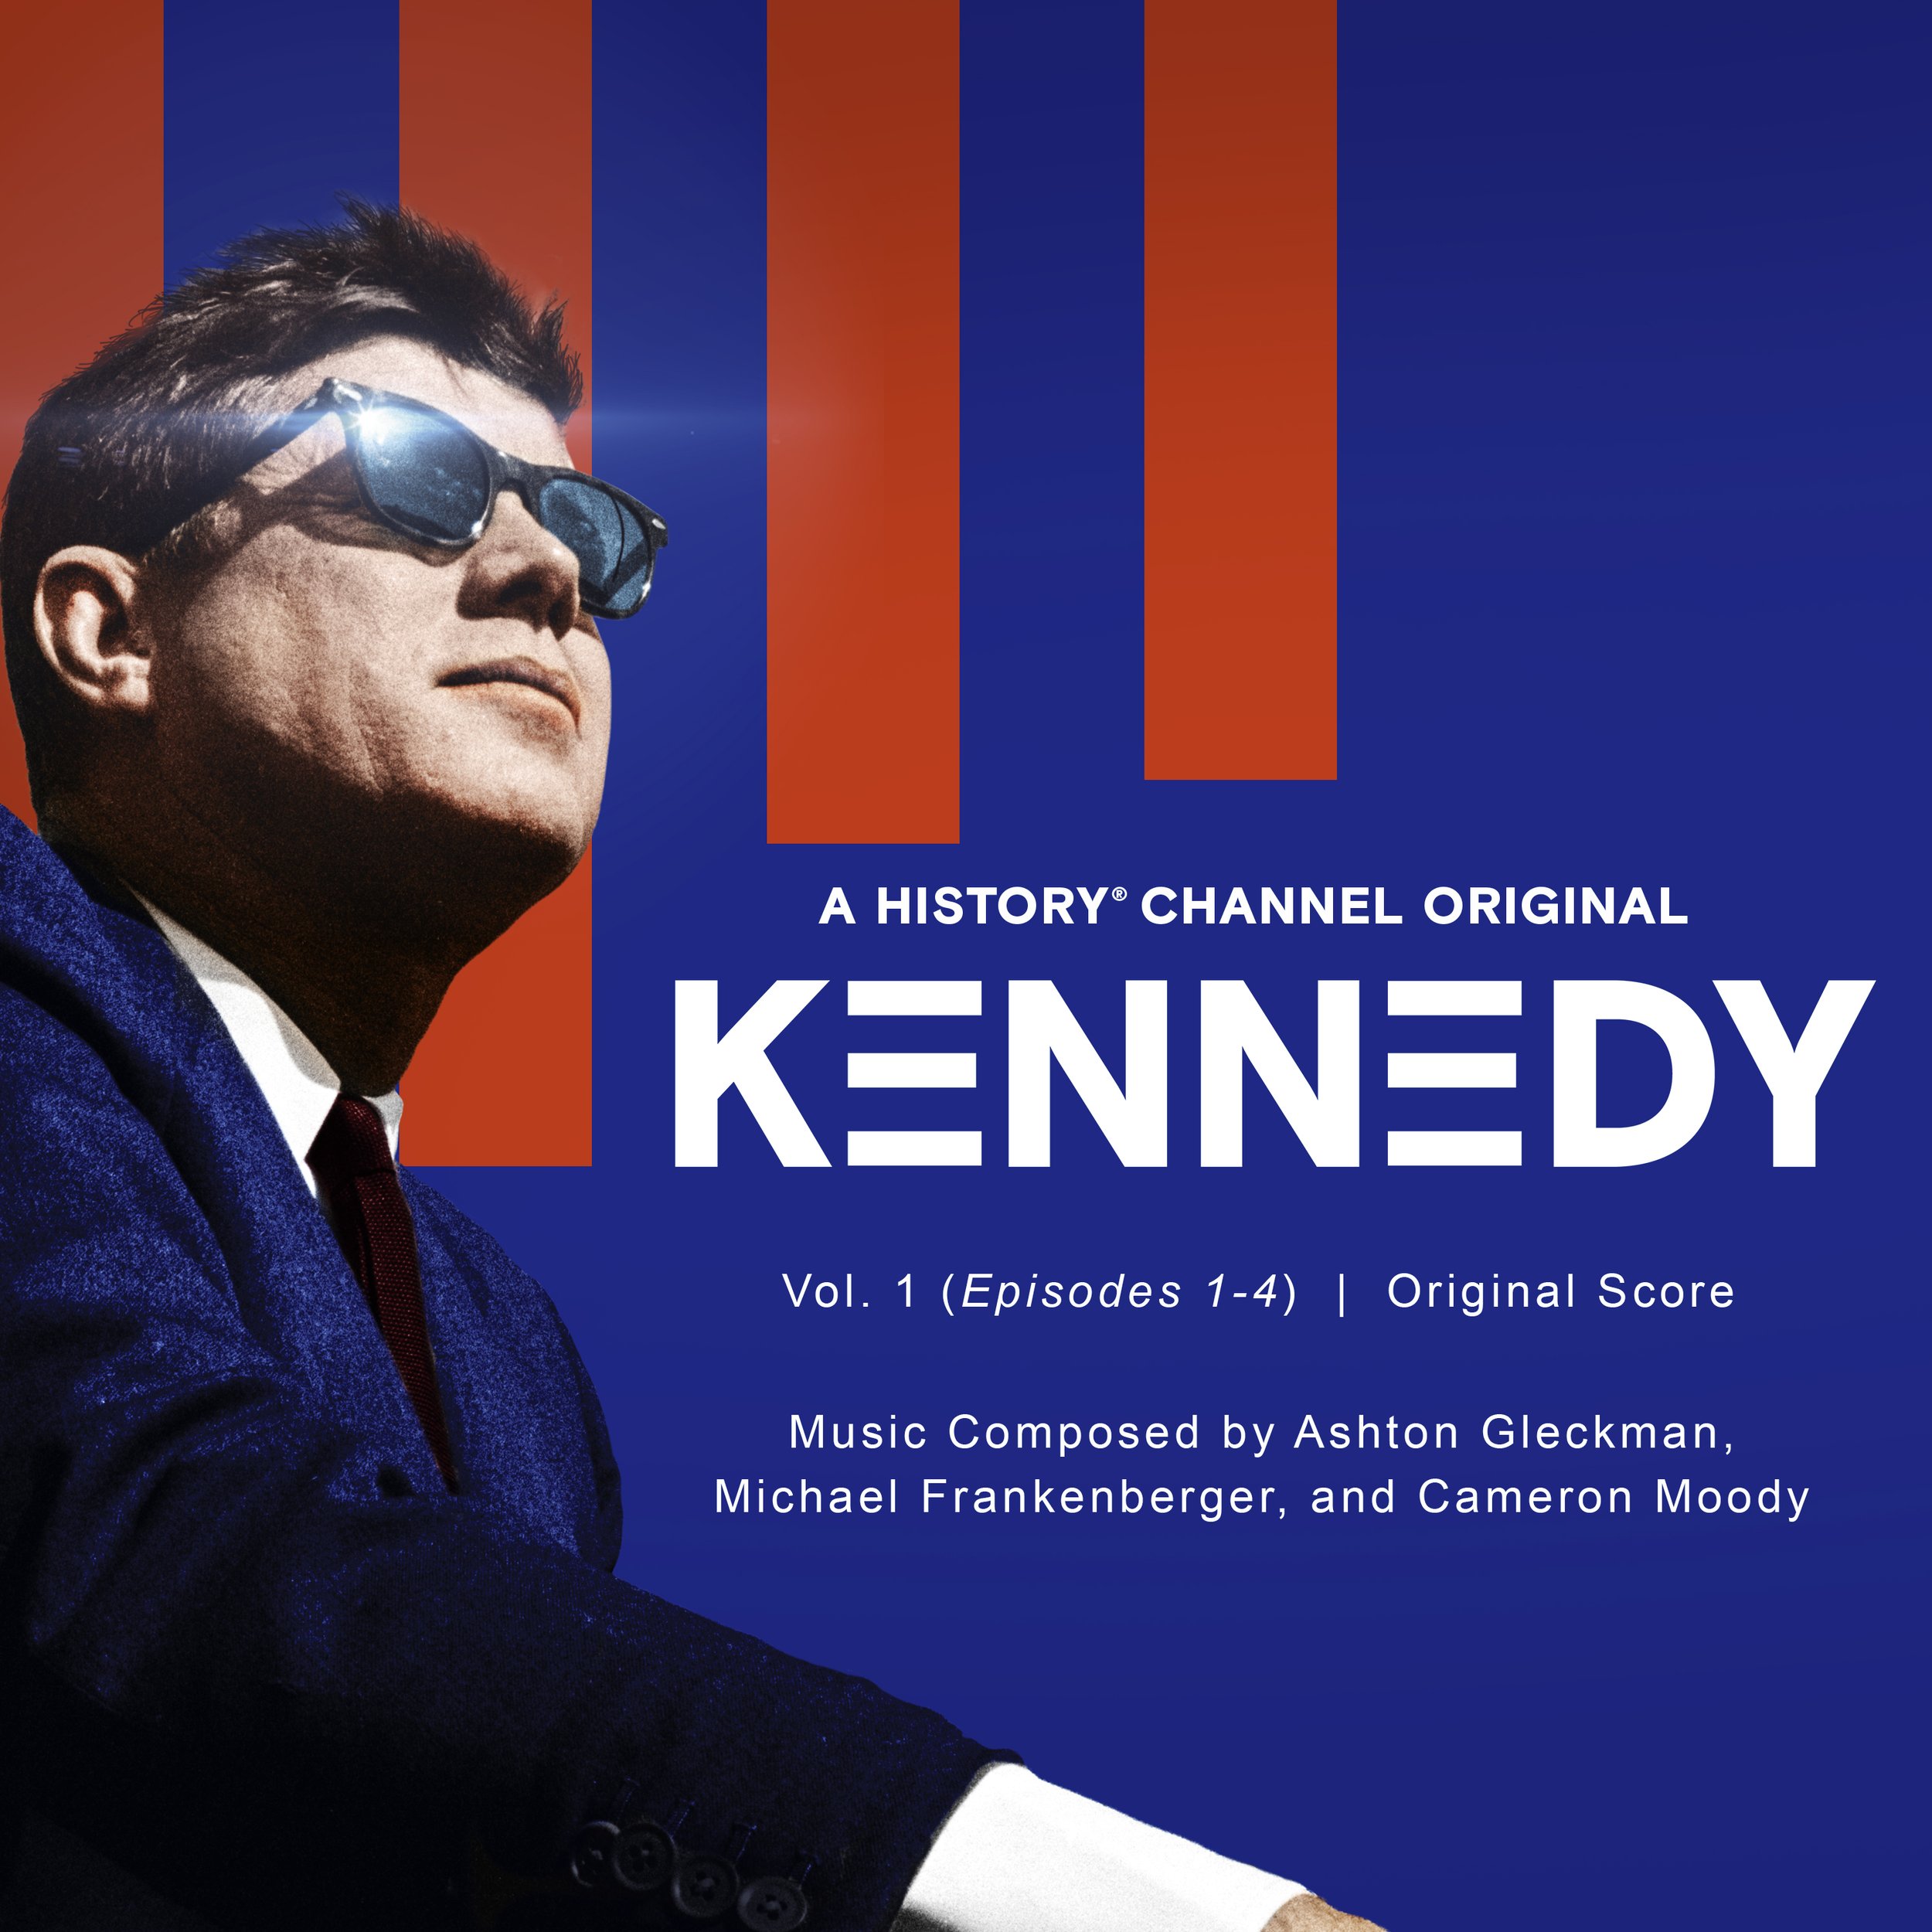 Kennedy, Vol 1 (Episodes 1-4)